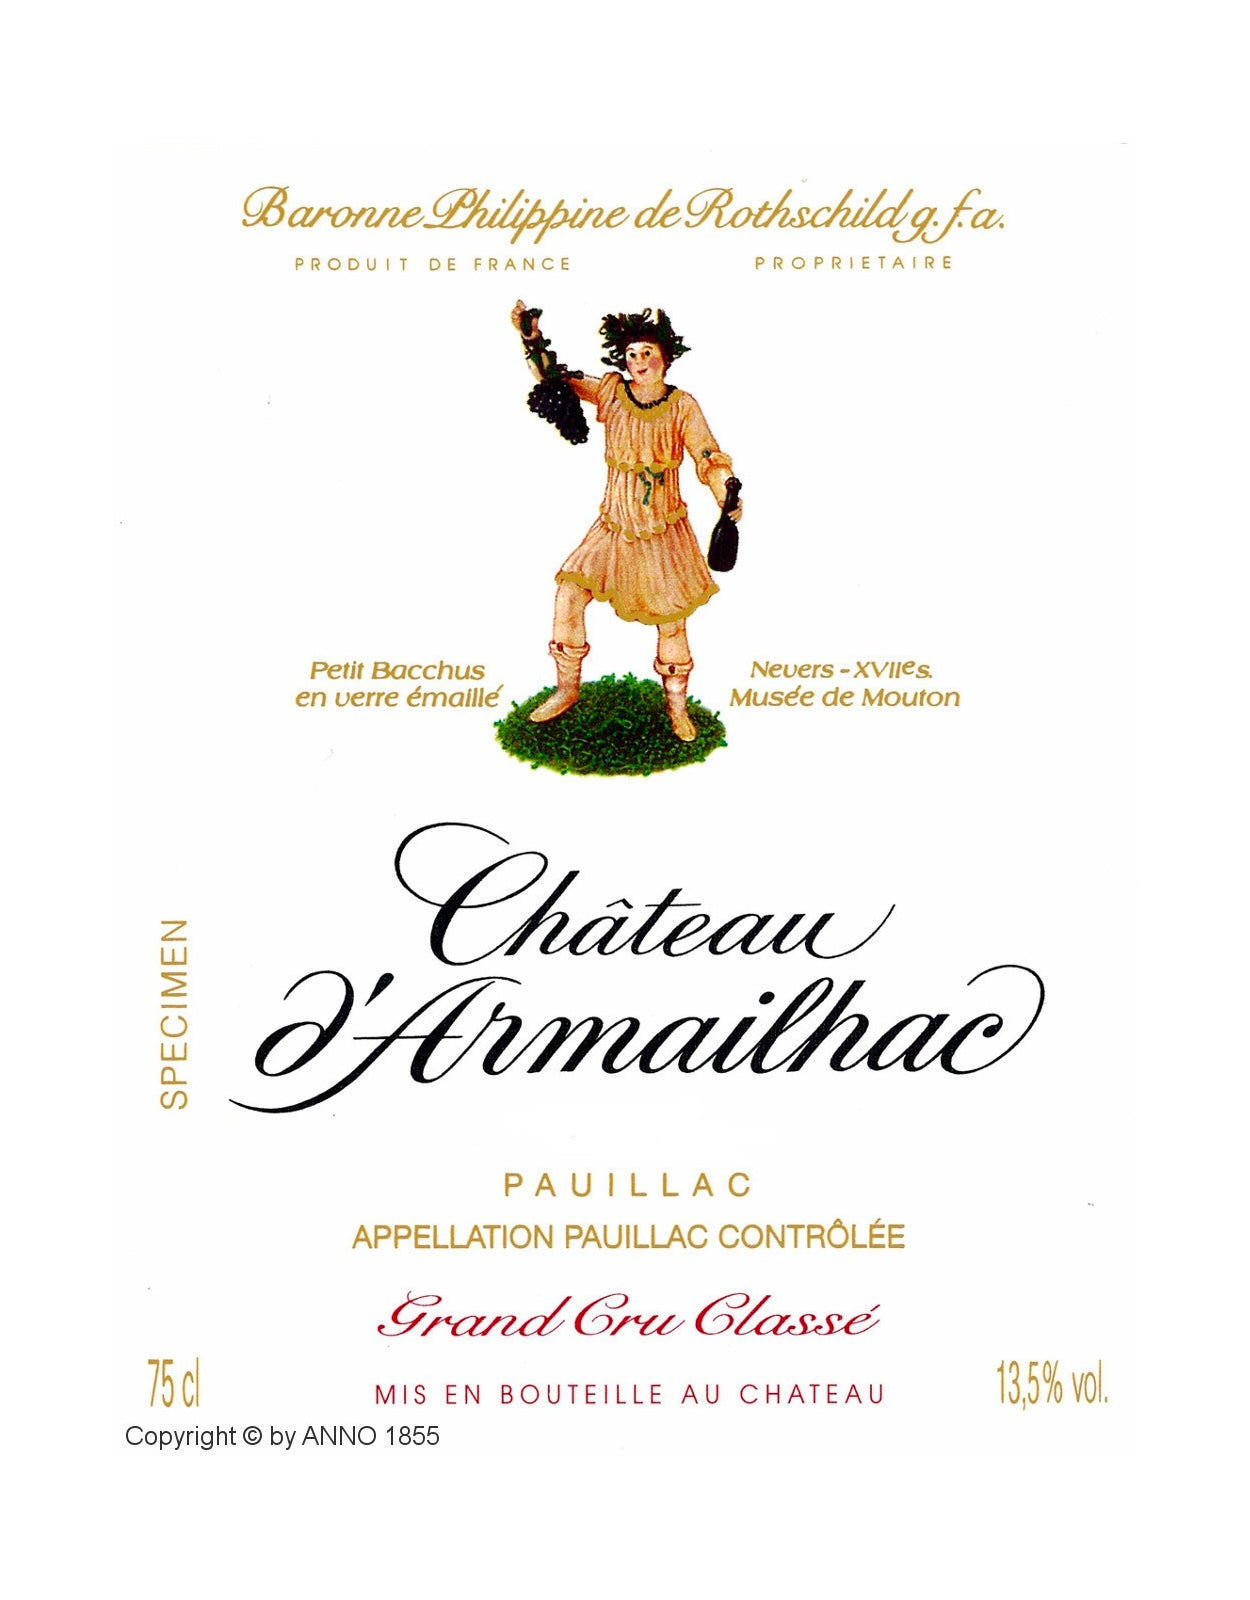 Chateau d'Armailhac 2016  - 3 Litre Bottle